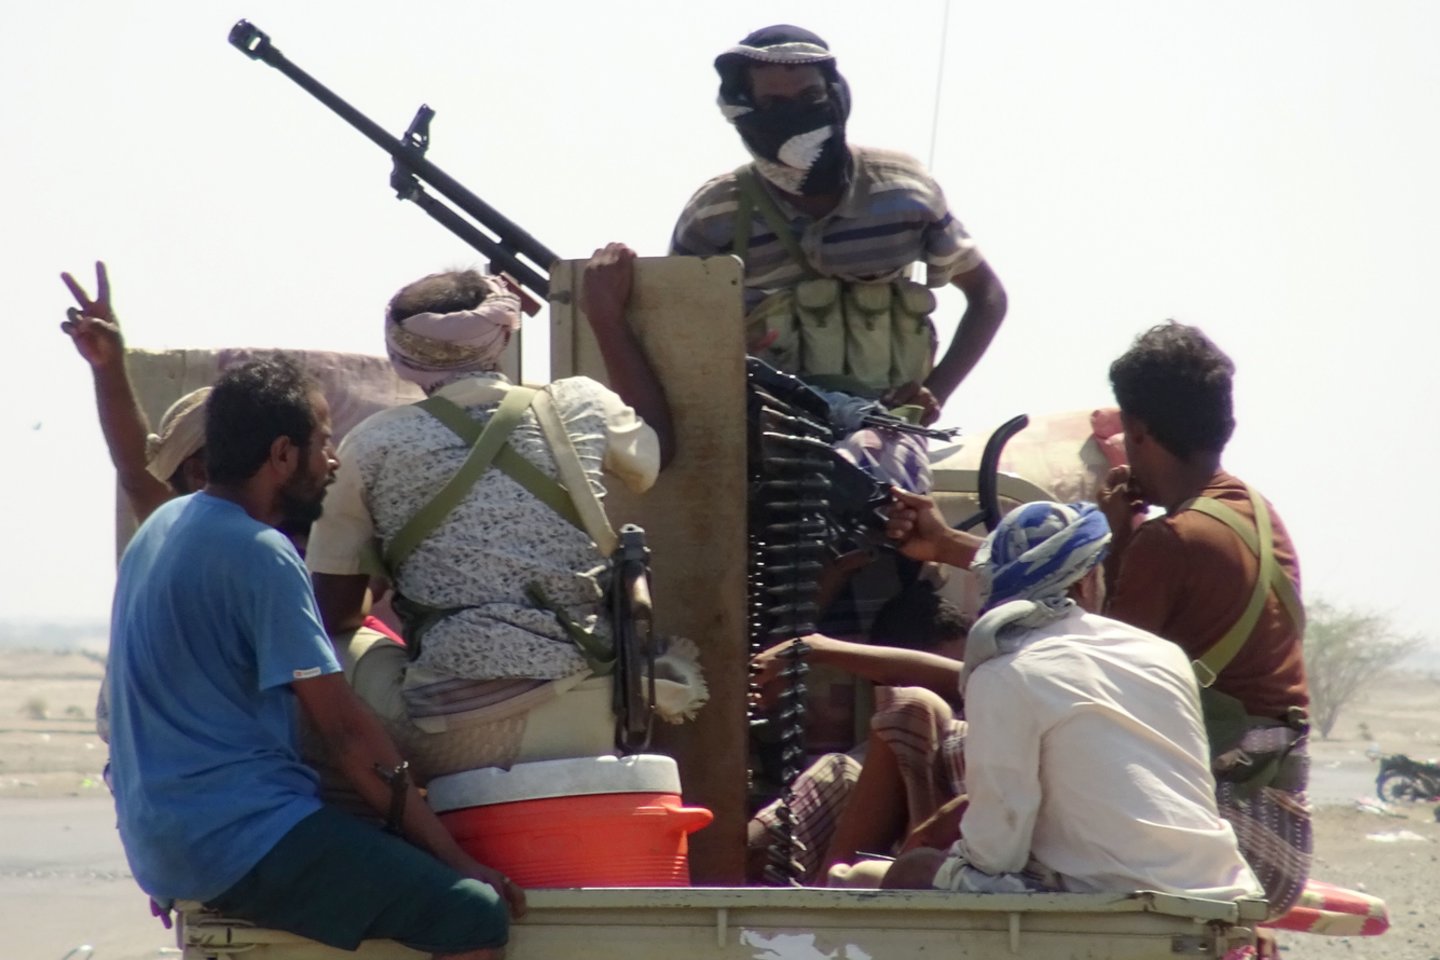  Rijado remiama Jemeno vyriausybė ir sukilėliai husiai sutiko prieš numatomas taikos derybos Švedijoje apsikeisti šimtais belaisvių, antradienį informavo naujienų agentūros AFP šaltiniai.<br> AFP/Scanpix nuotr.